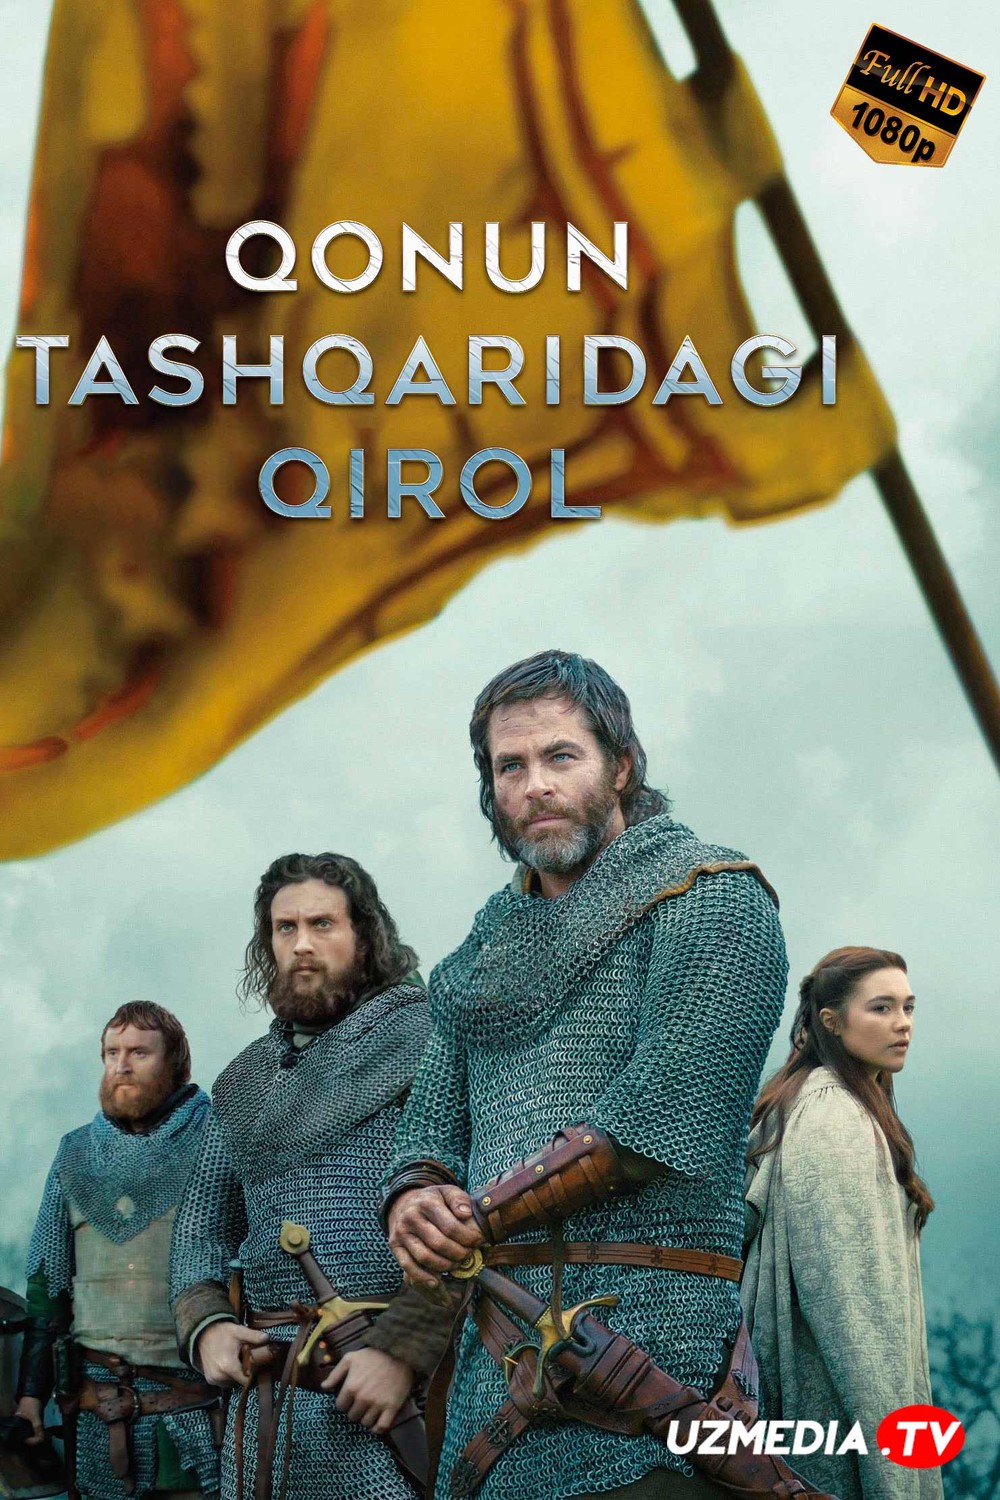 Qonundan tashqaridagi qirol Netflix filmi Uzbek tilida O'zbekcha 2018 tarjima kino Full HD skachat